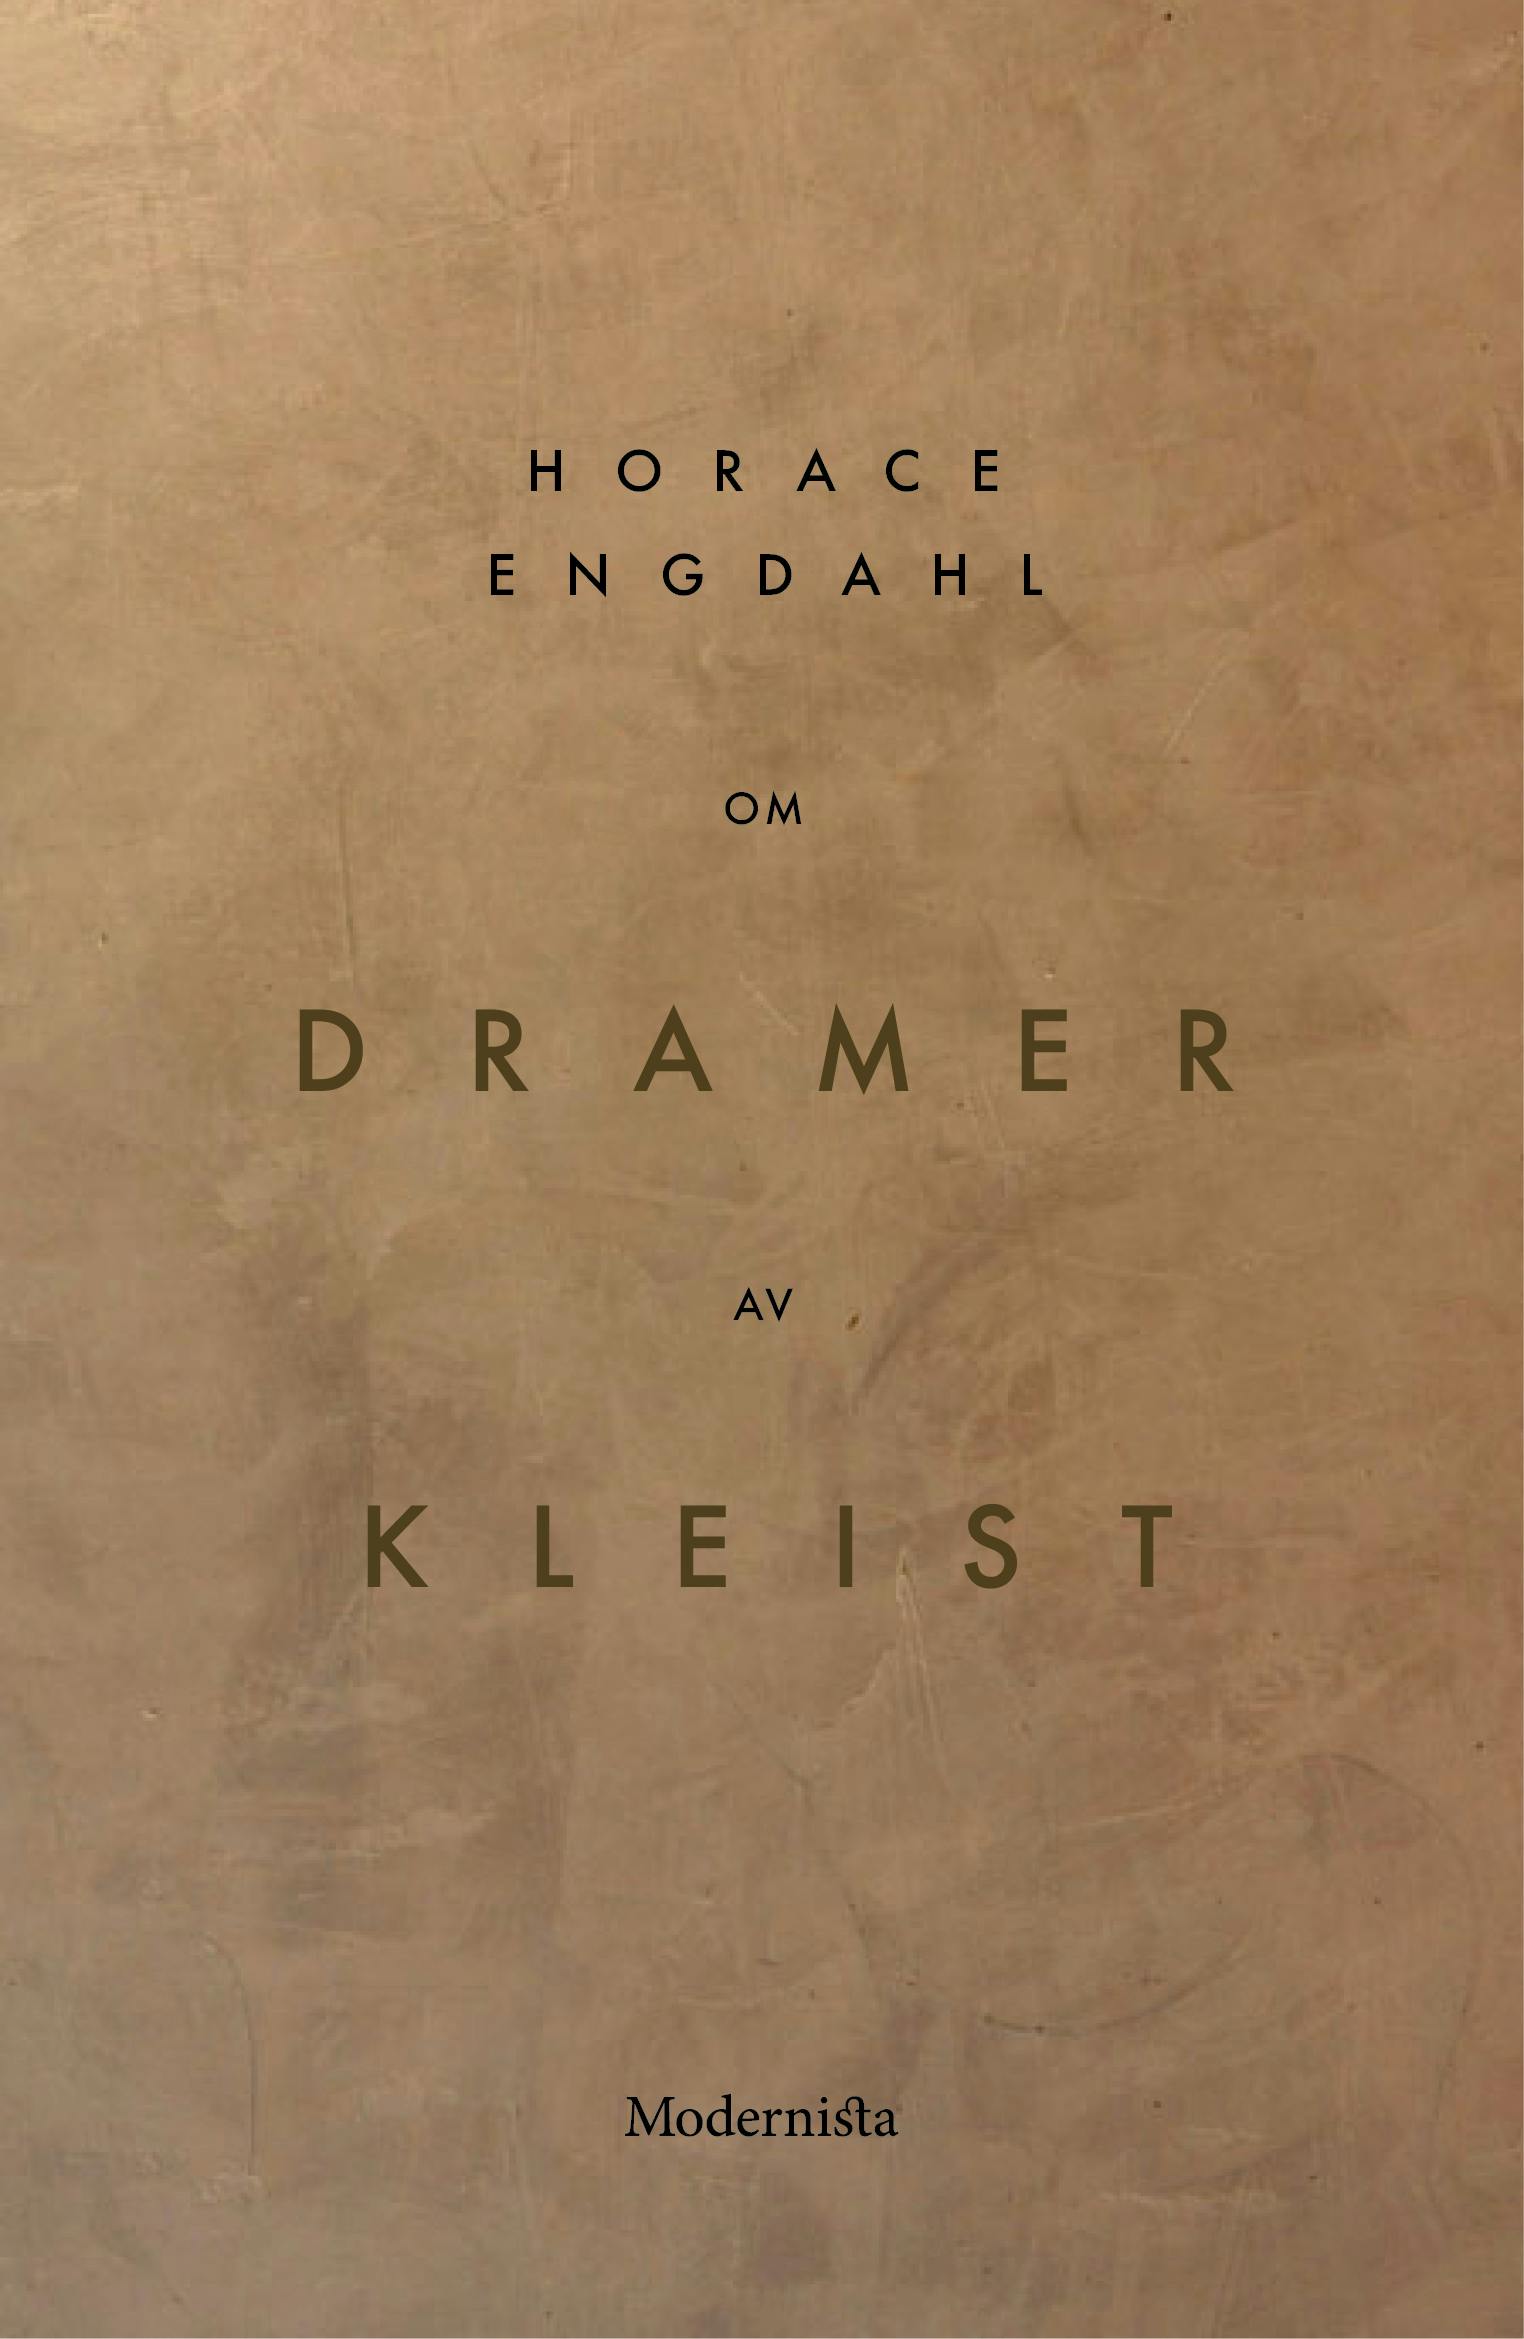 Om Dramer av Heinrich von Kleist - Horace Engdahl